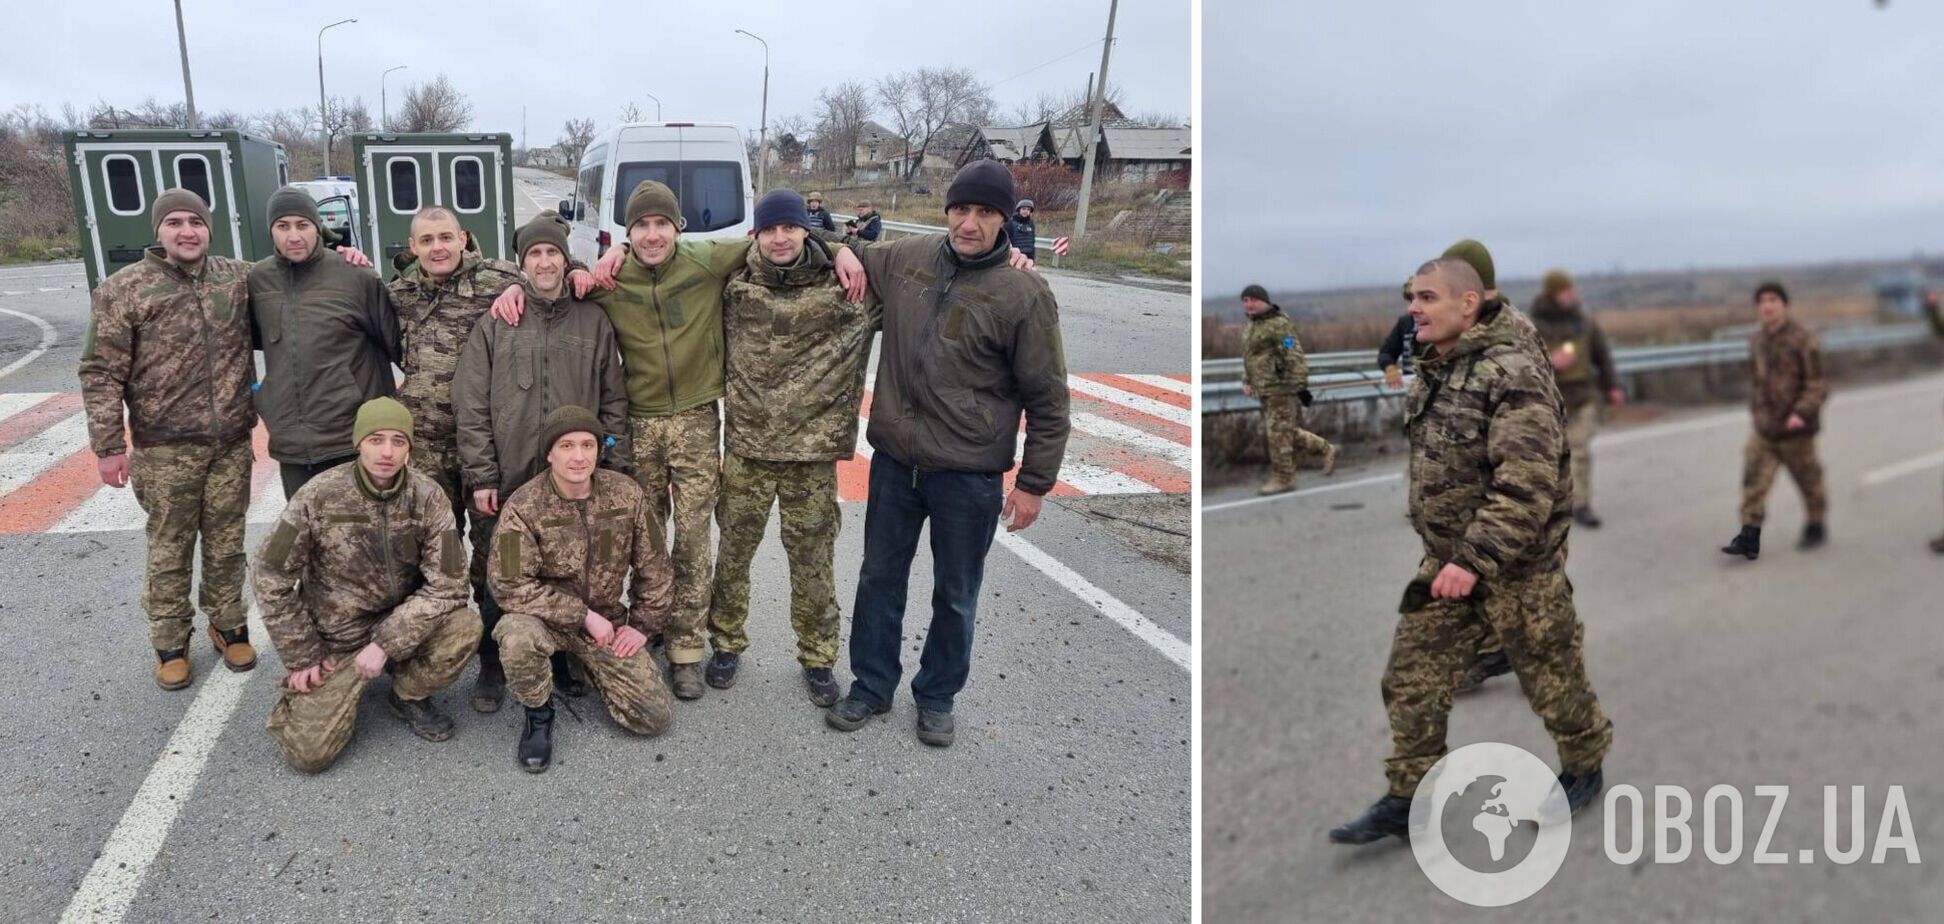 'Наши дома': из вражеского плена освободили еще 12 украинцев, в том числе защитников Мариуполя и острова Змеиный. Фото и видео